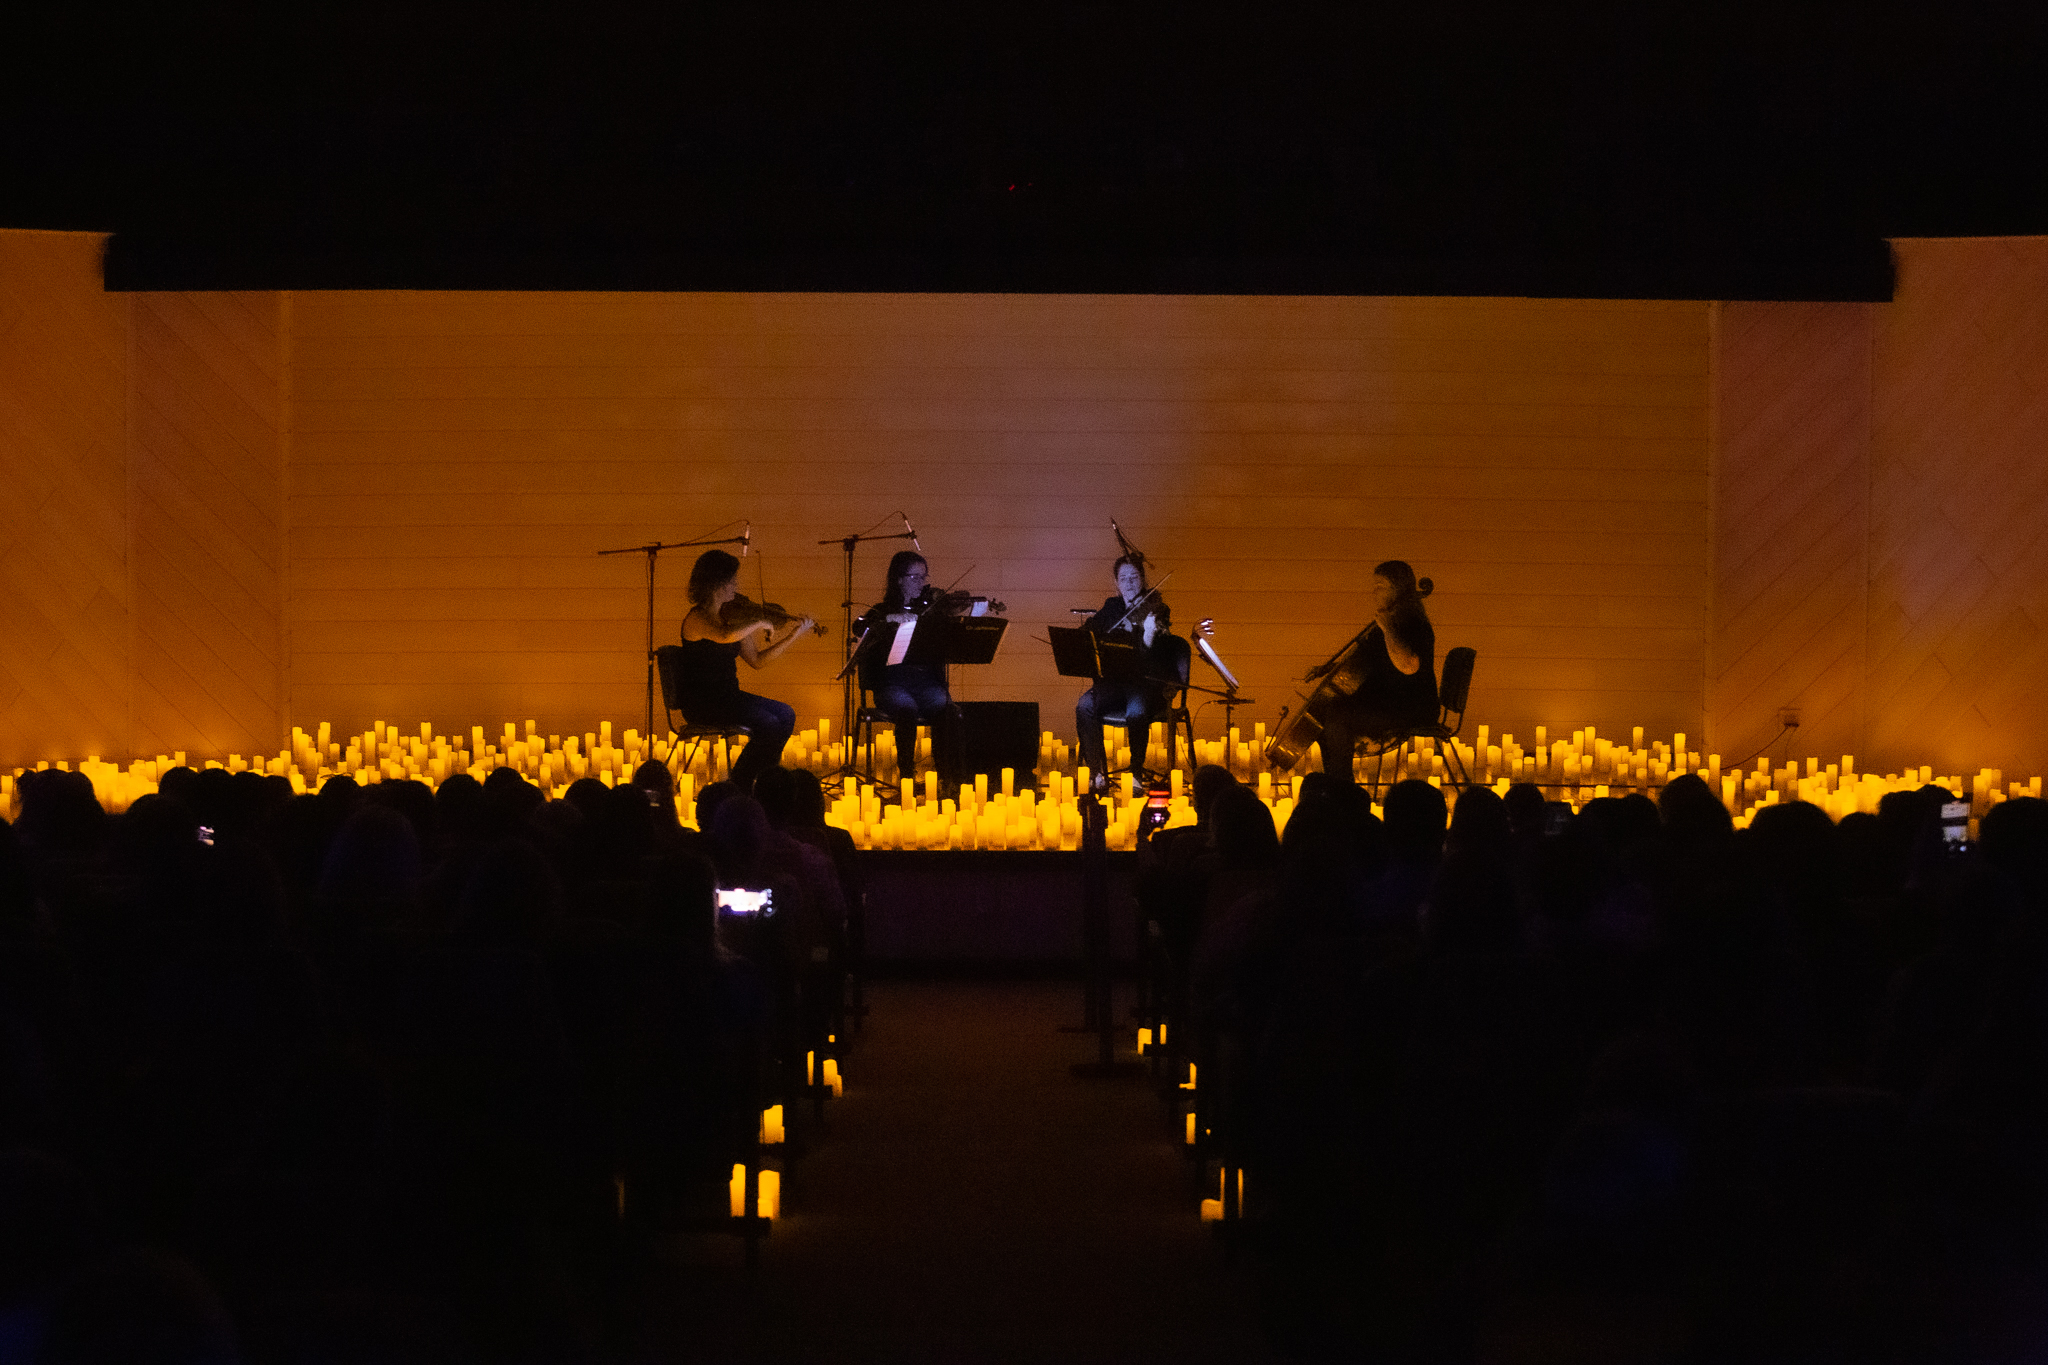 Imagem do auditório escuro, iluminado com velas de led no palco. No centro, quatro musicistas, sentadas, se apresentam com instrumentos de cordas 